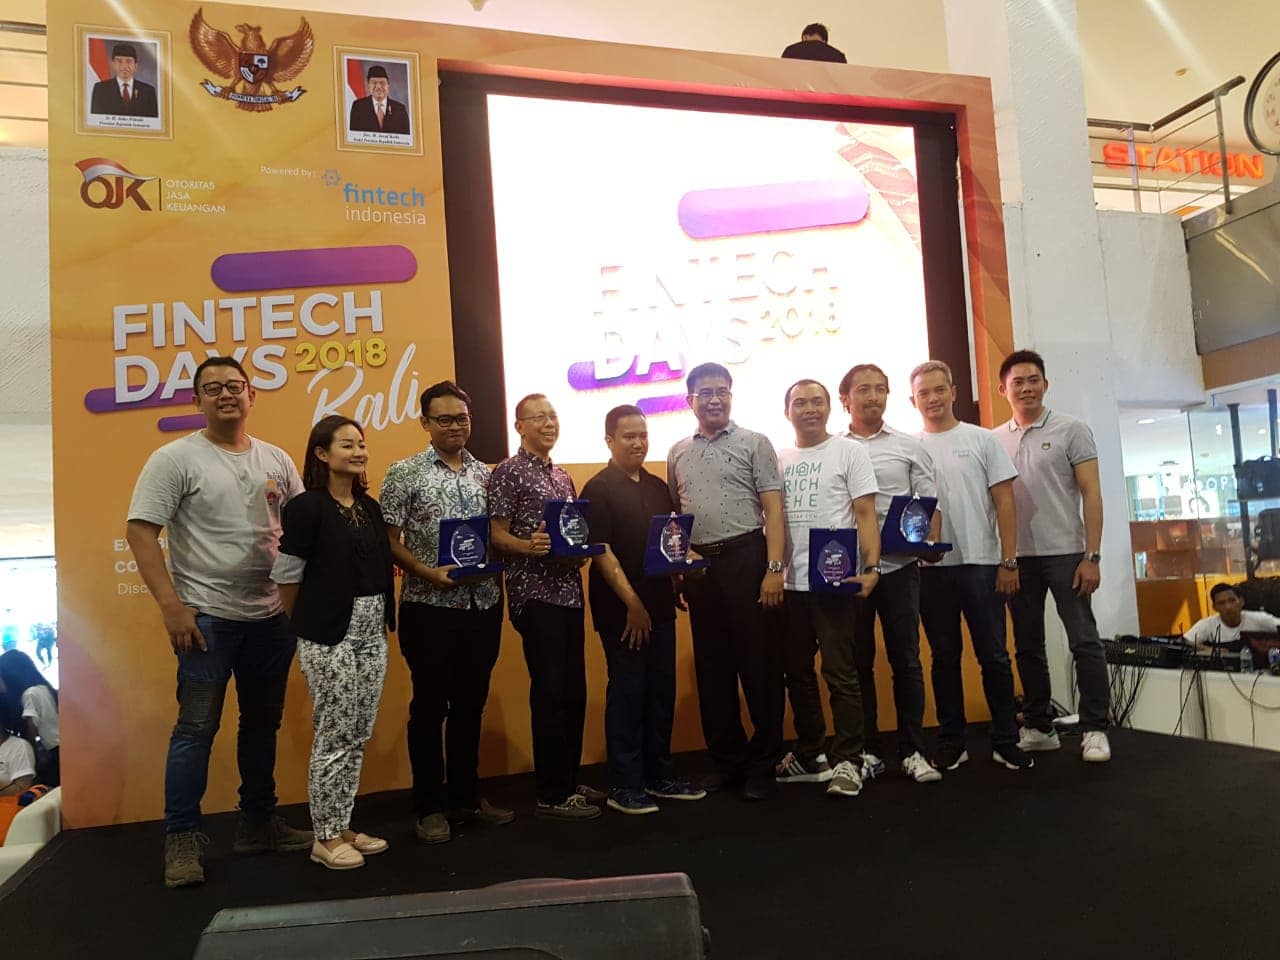 Semantic Jawara Kompetisi OJK Fintech Days 2018